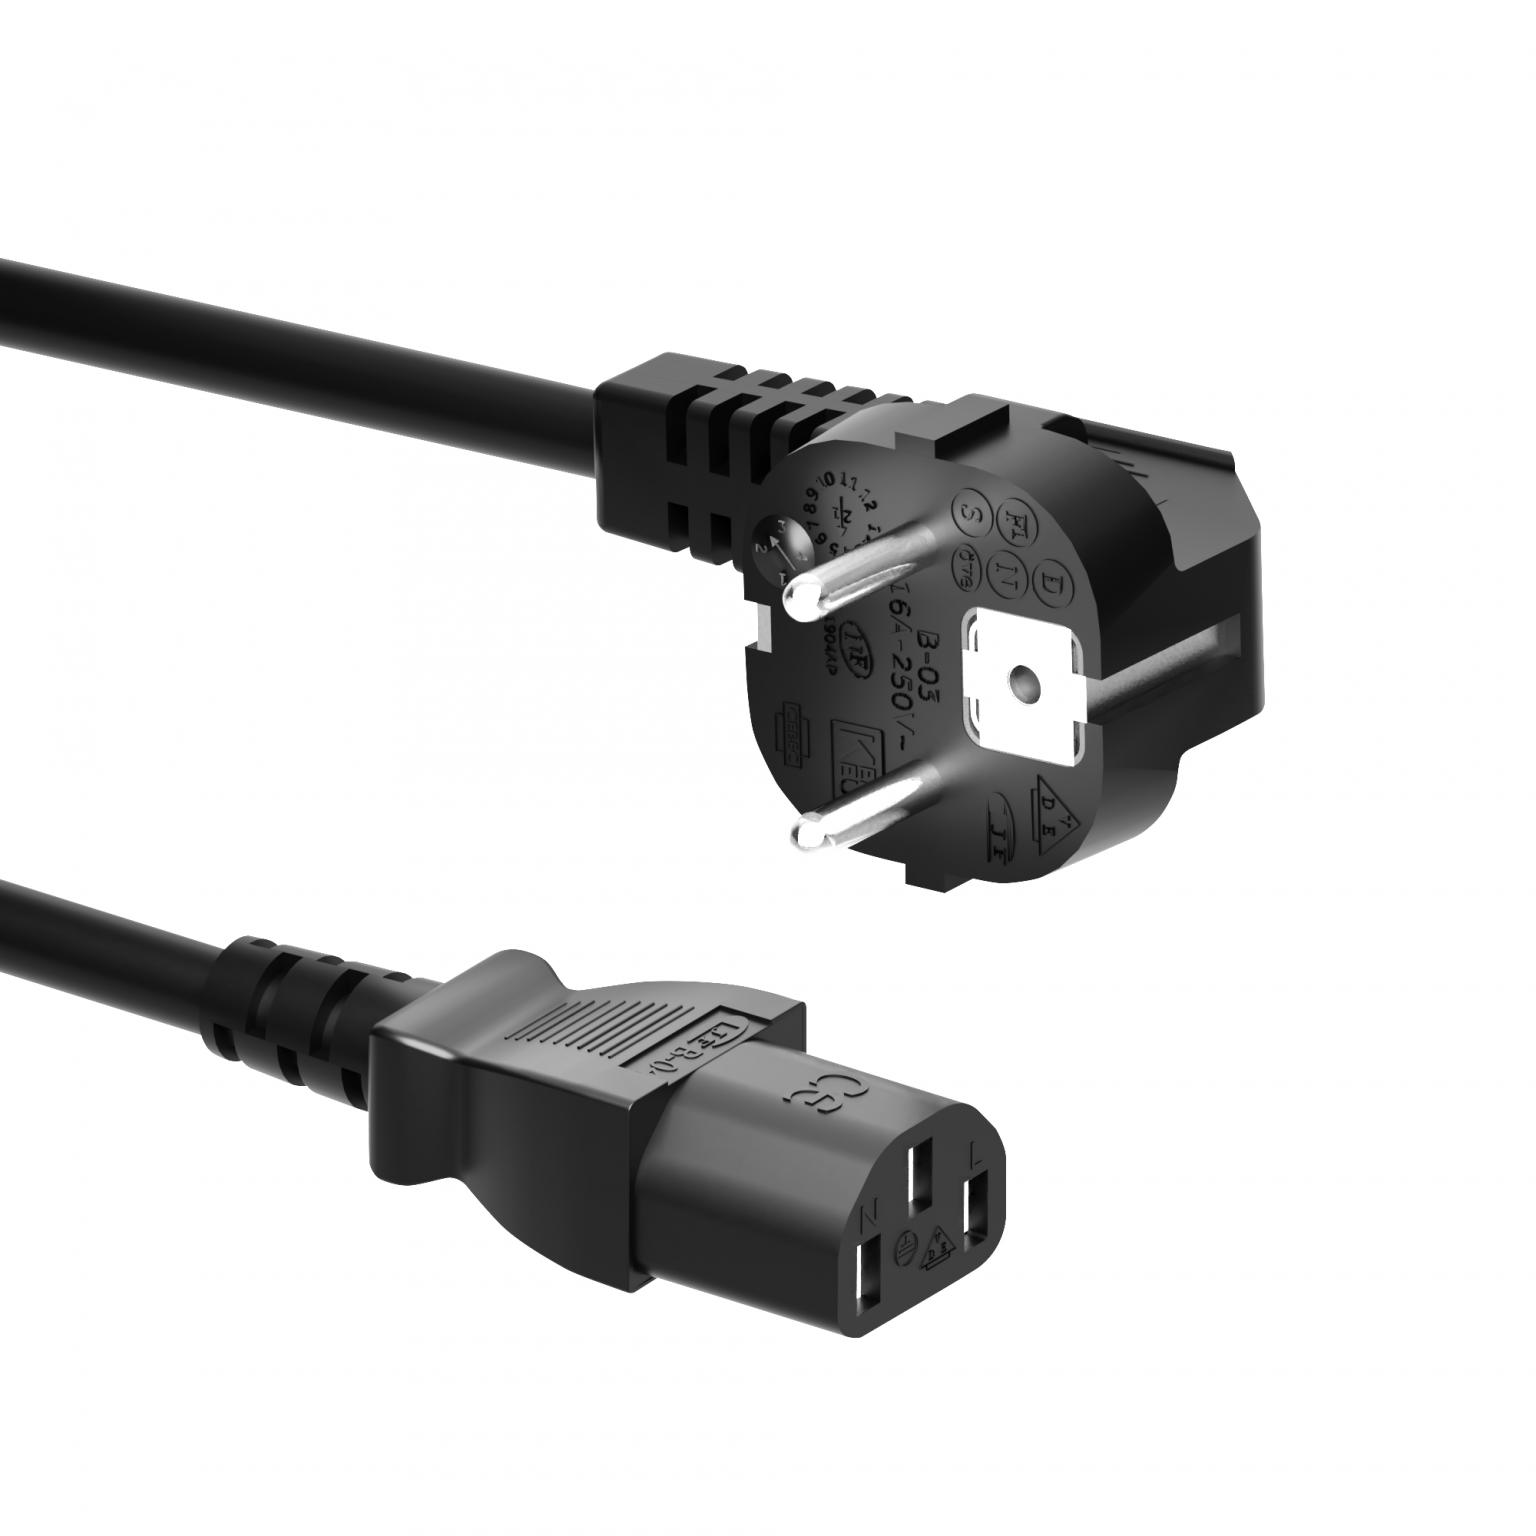 Câble d'alimentation Angle Plug Iec C13 pour projecteur, moniteur